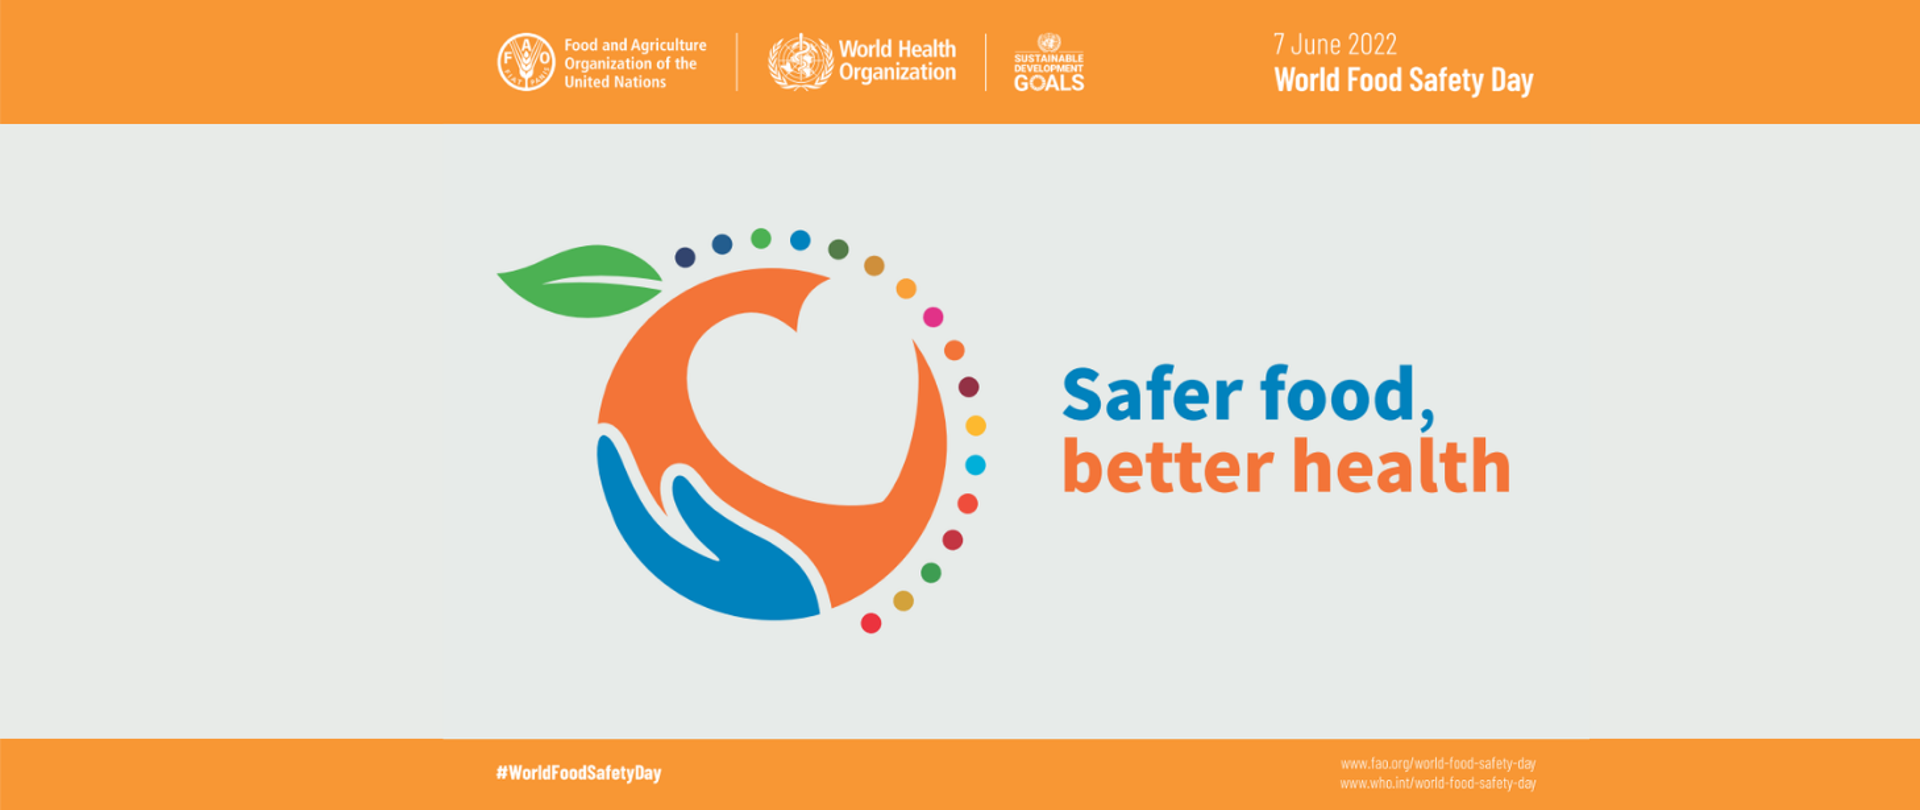 Grafika przedstawia dłoń i serce wpisane w koło. Obok widnieje napis: Safer food, better health